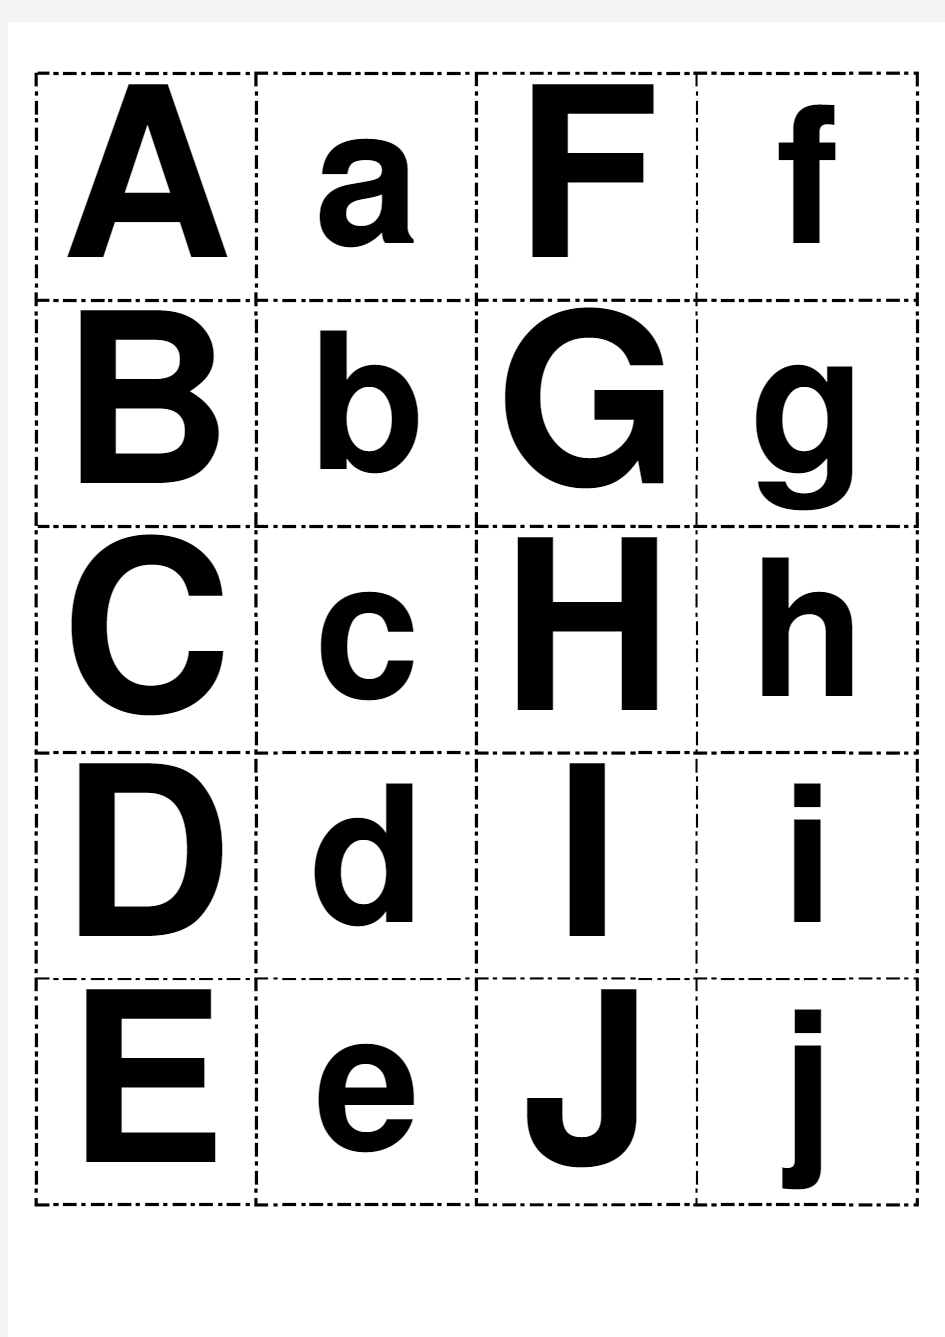 26个英文字母打印模板(可打印成卡片大小,供小孩学习。已排序)